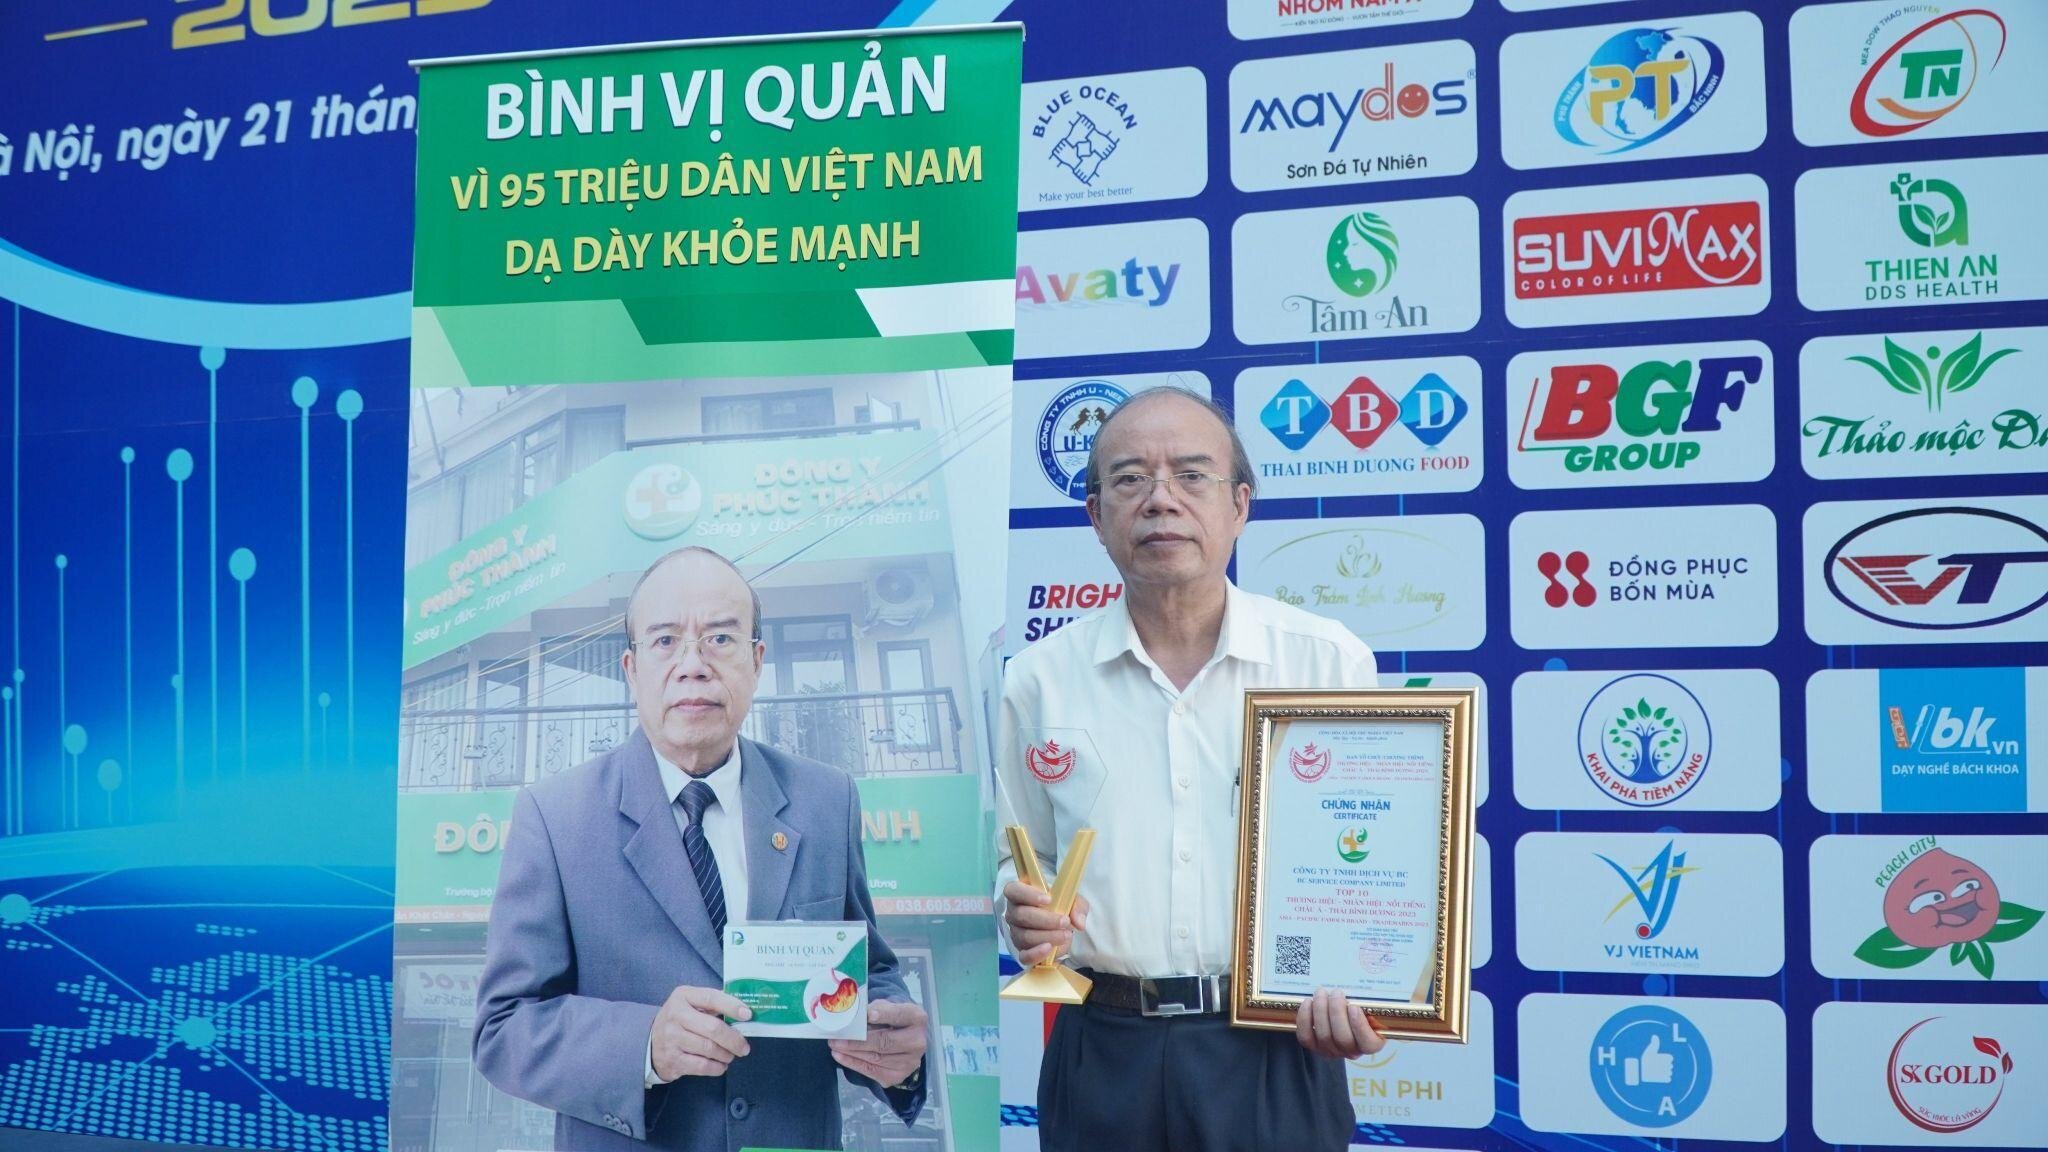 PGS.TS bác sĩ, thầy thuốc ưu tú Nguyễn Văn Toại - cha đẻ sản phẩm Bình Vị Quản.